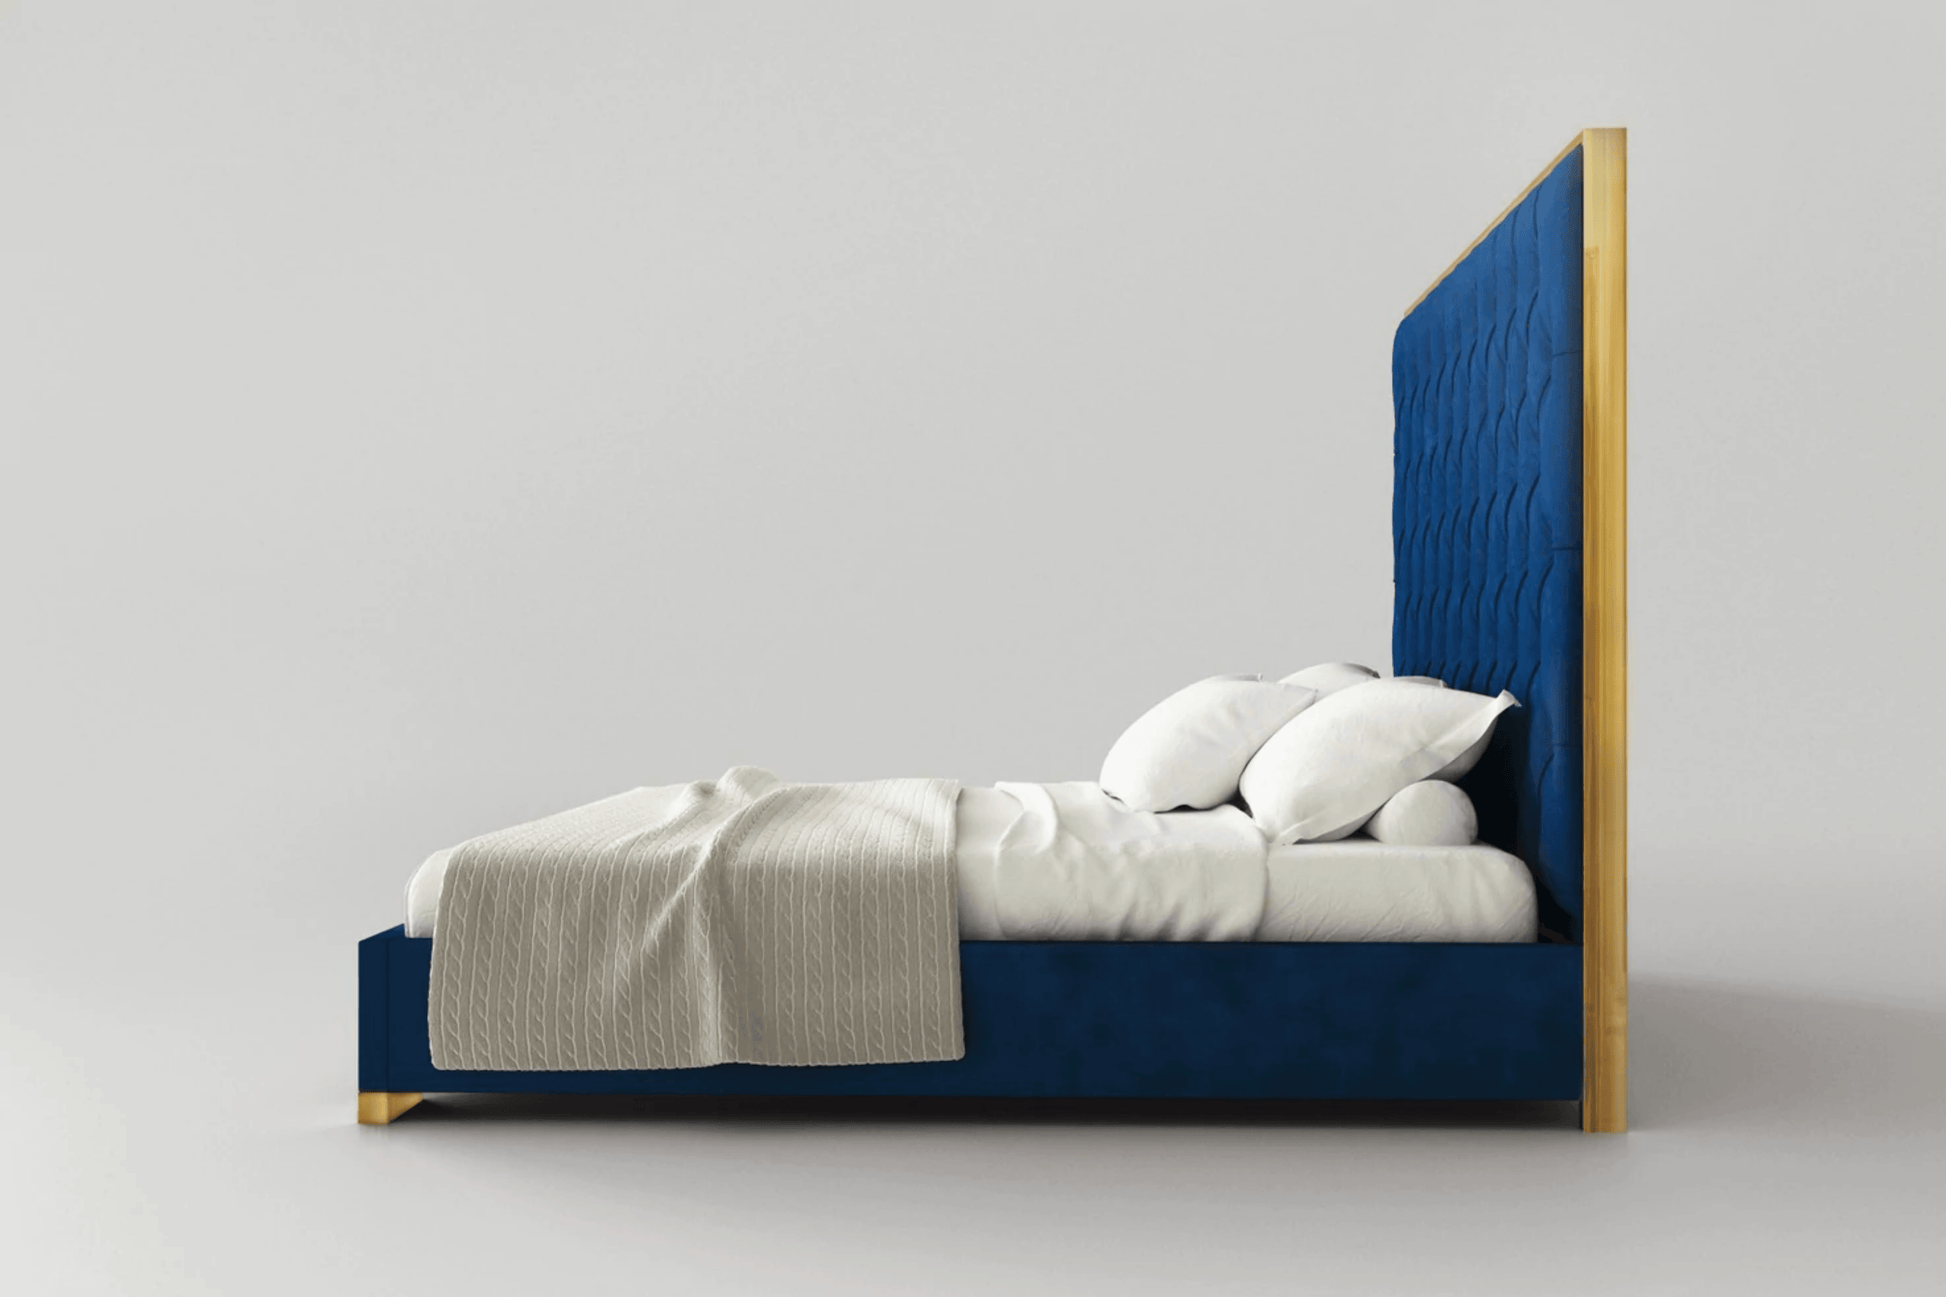 Venecia Bedroom Bed - Venini Furniture 